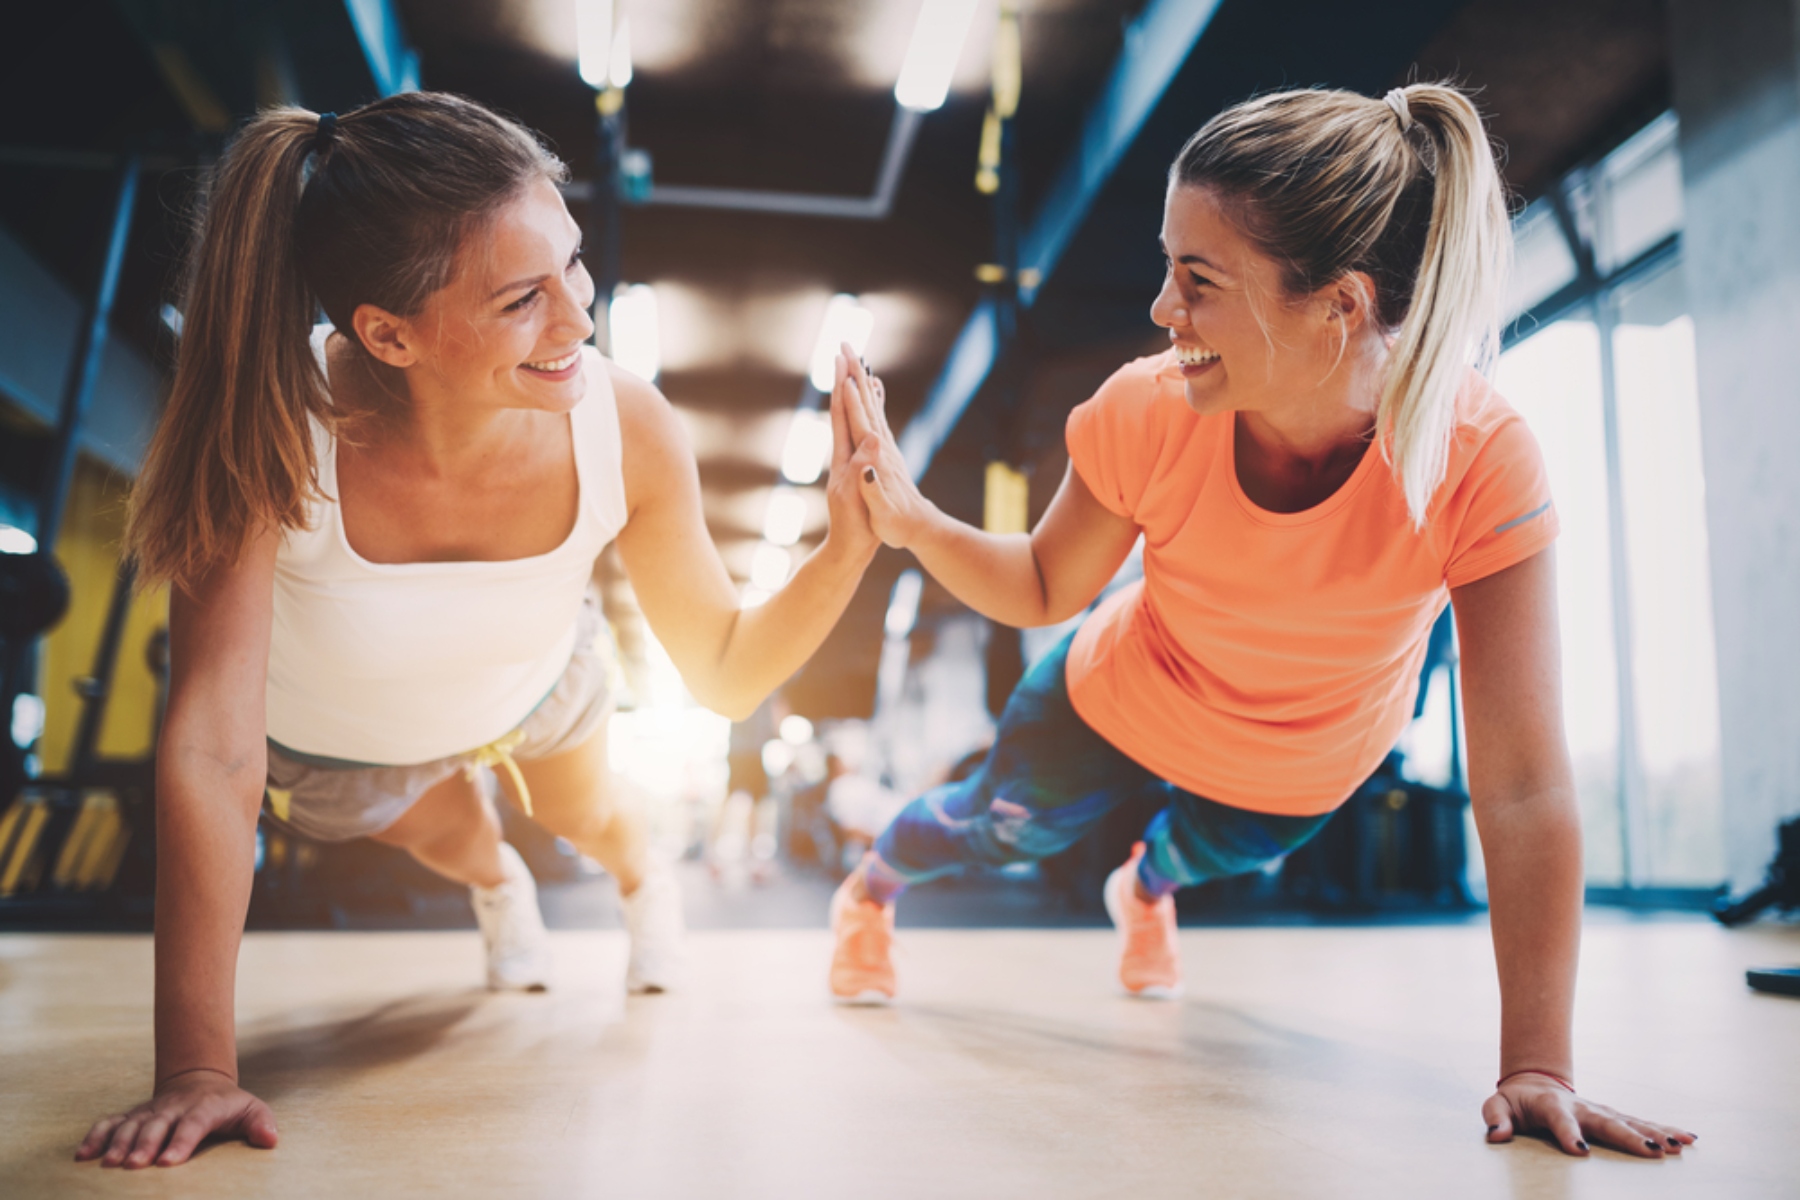 Άσκηση μαζί: Τα οφέλη της προπόνησης με άλλους – Η ισχύς εν τη ενώσει